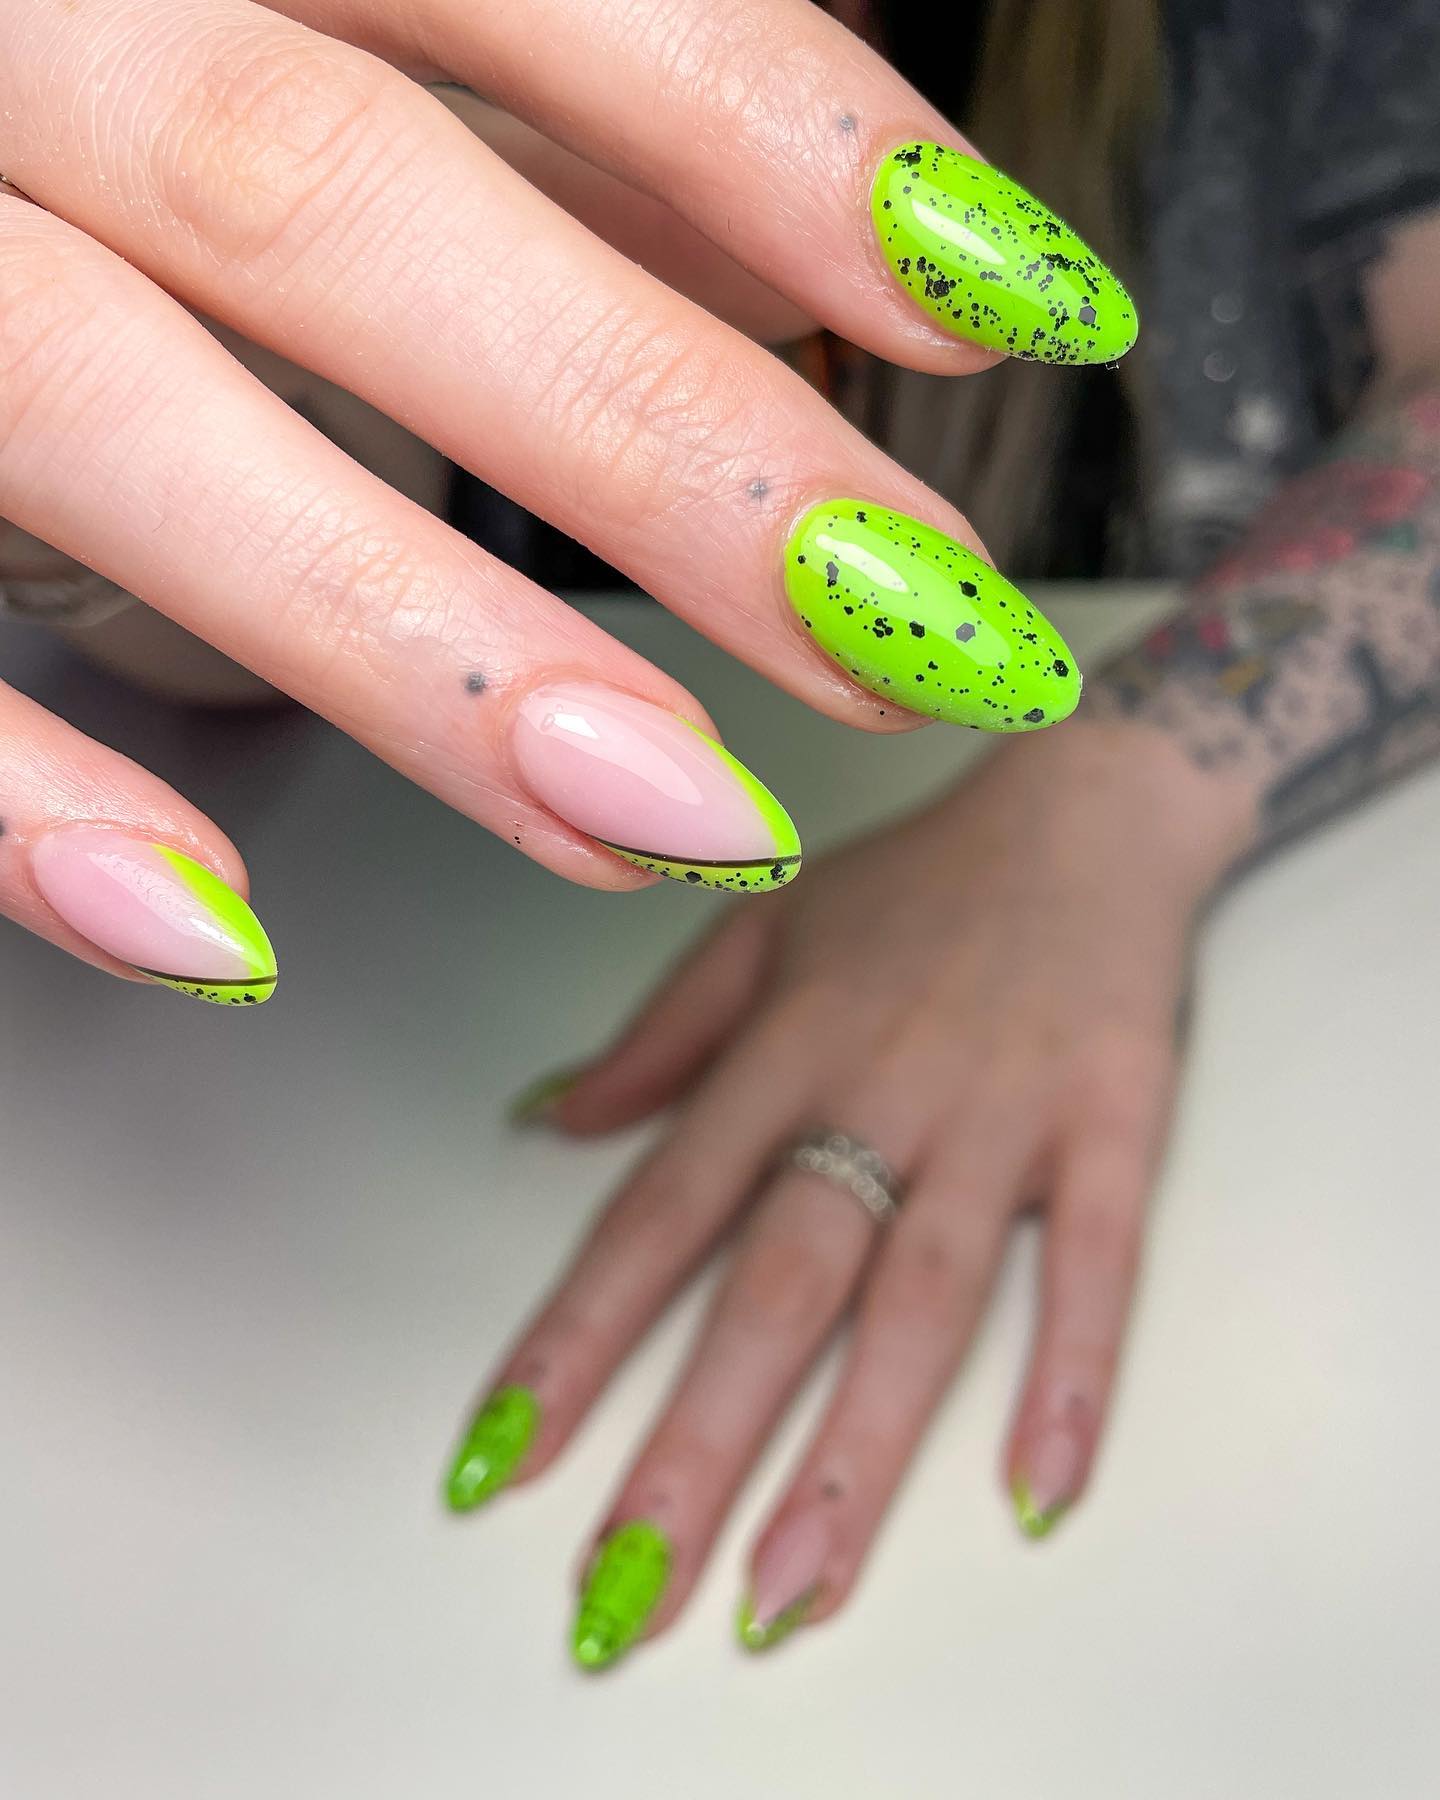 Zbliżenie limonkowo-zielonych paznokci migdałowych z czarnymi plamami